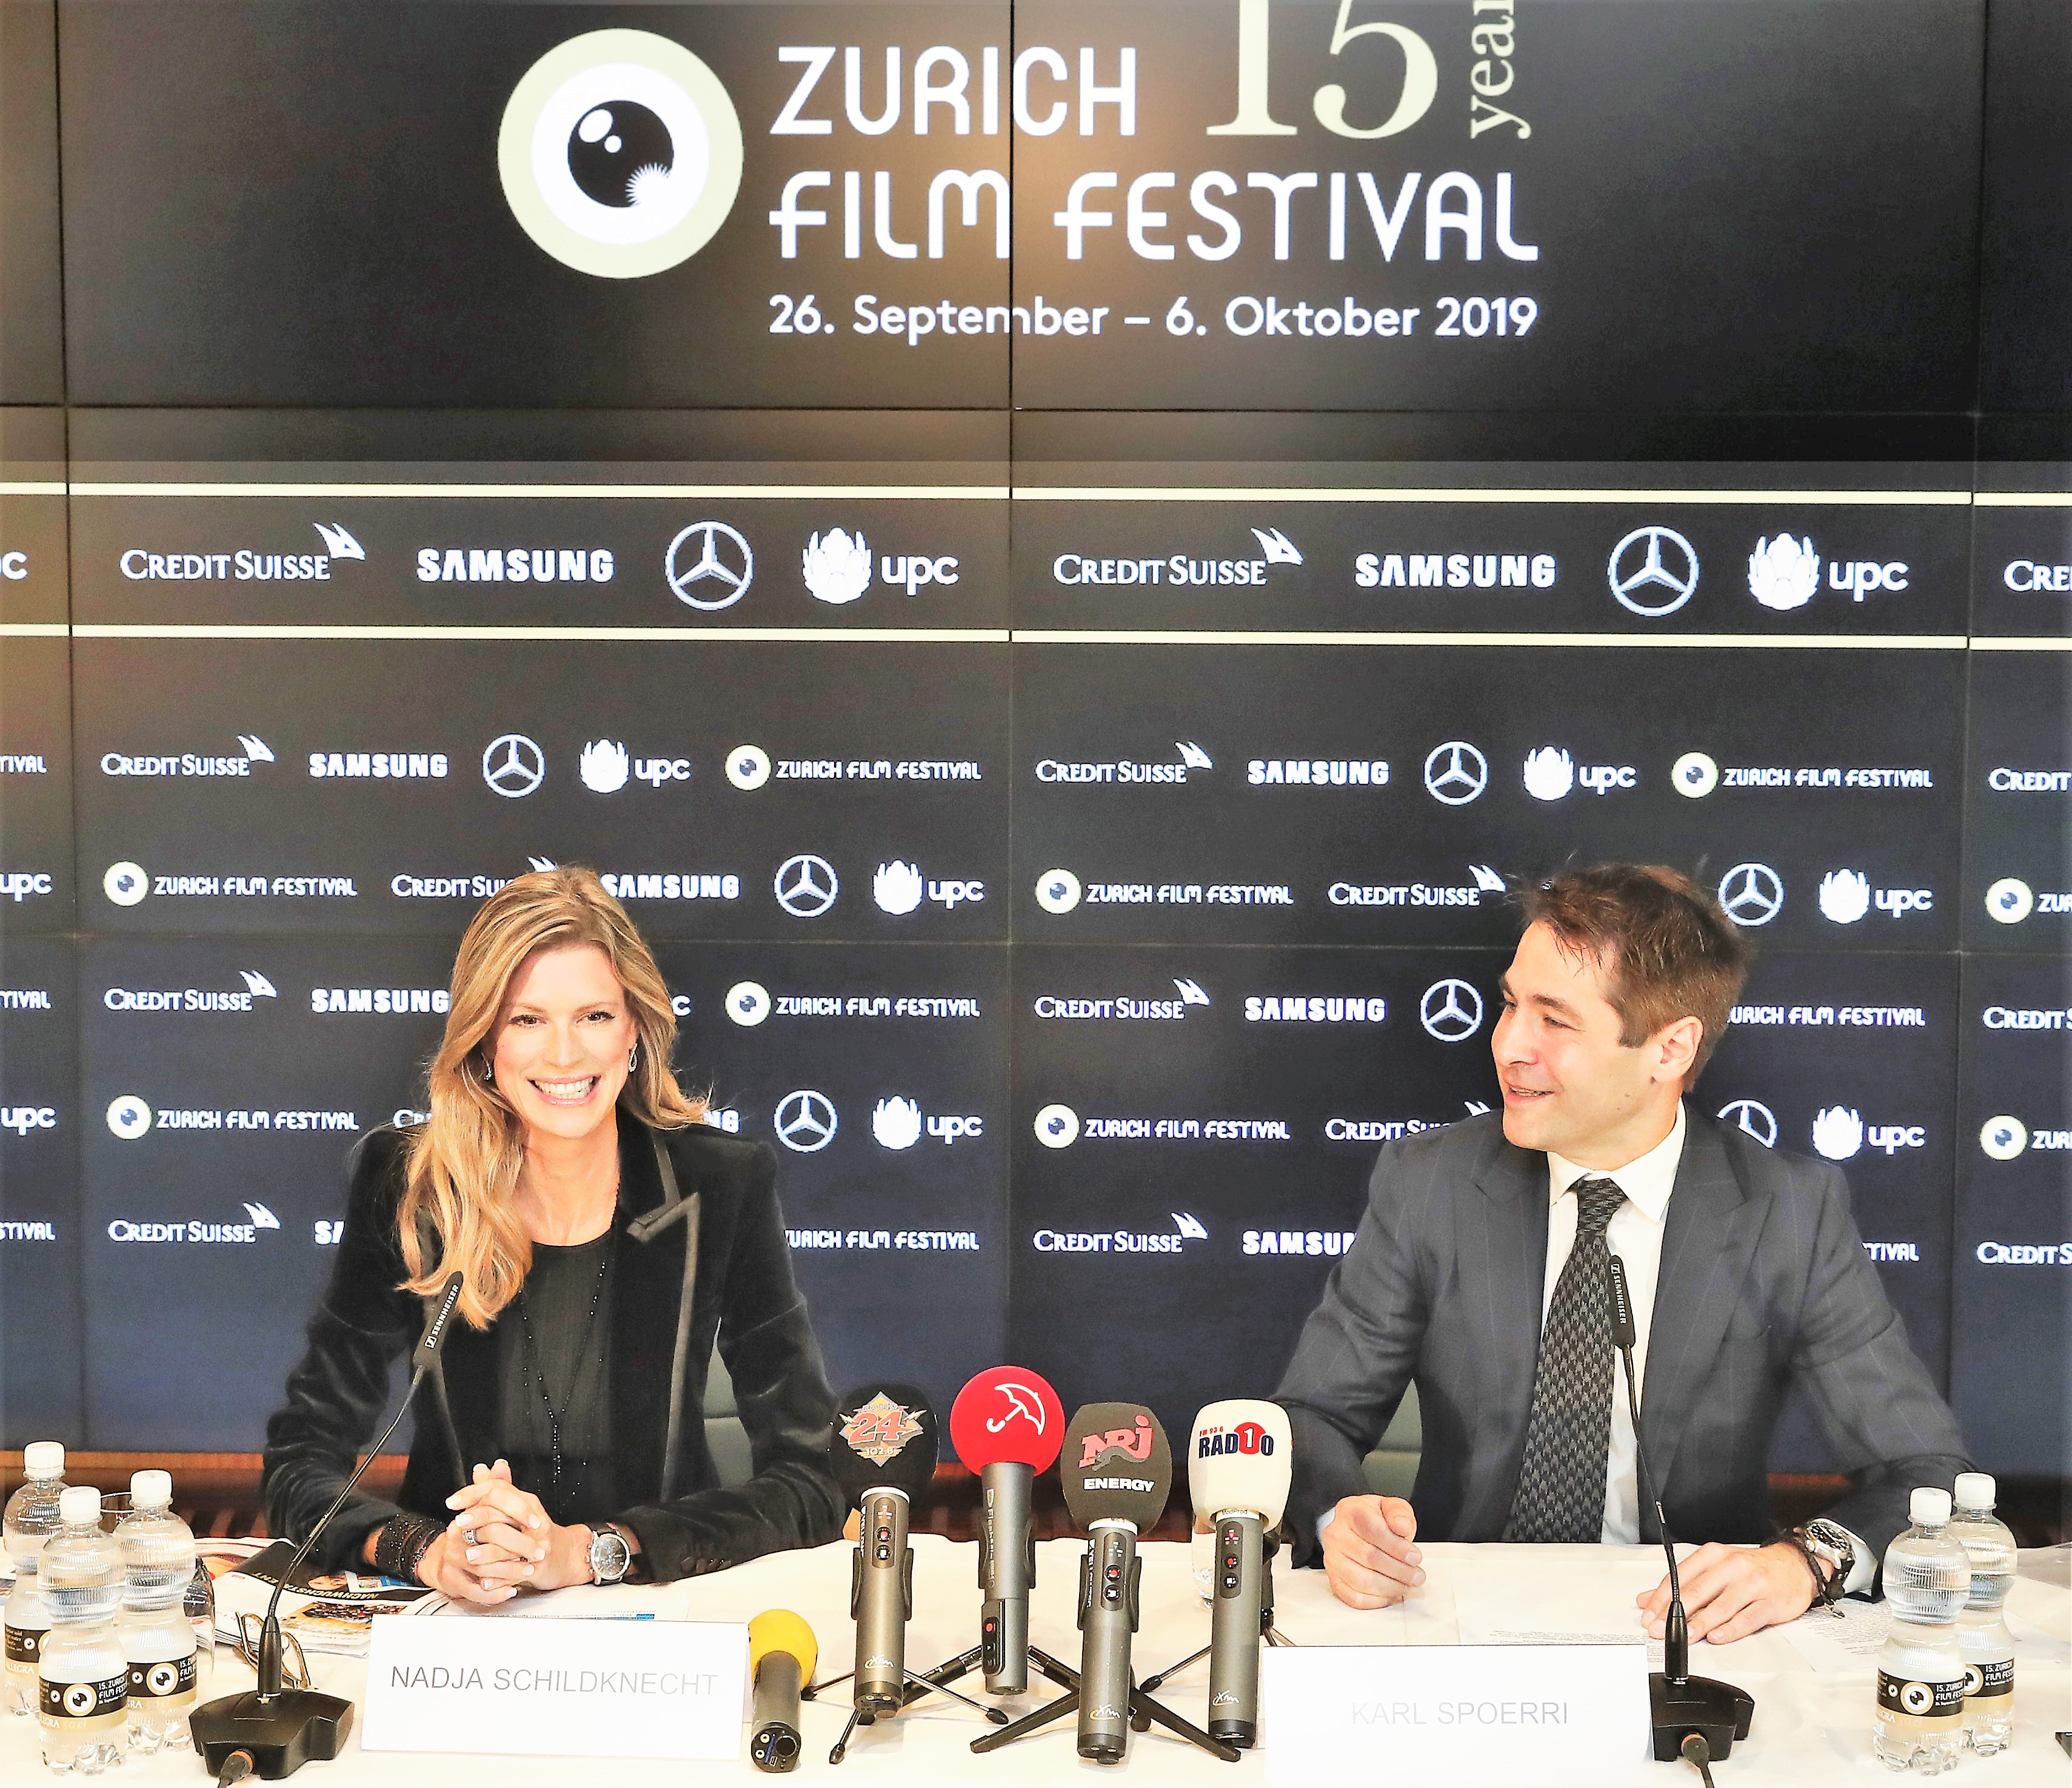 Zurigo Film Festival